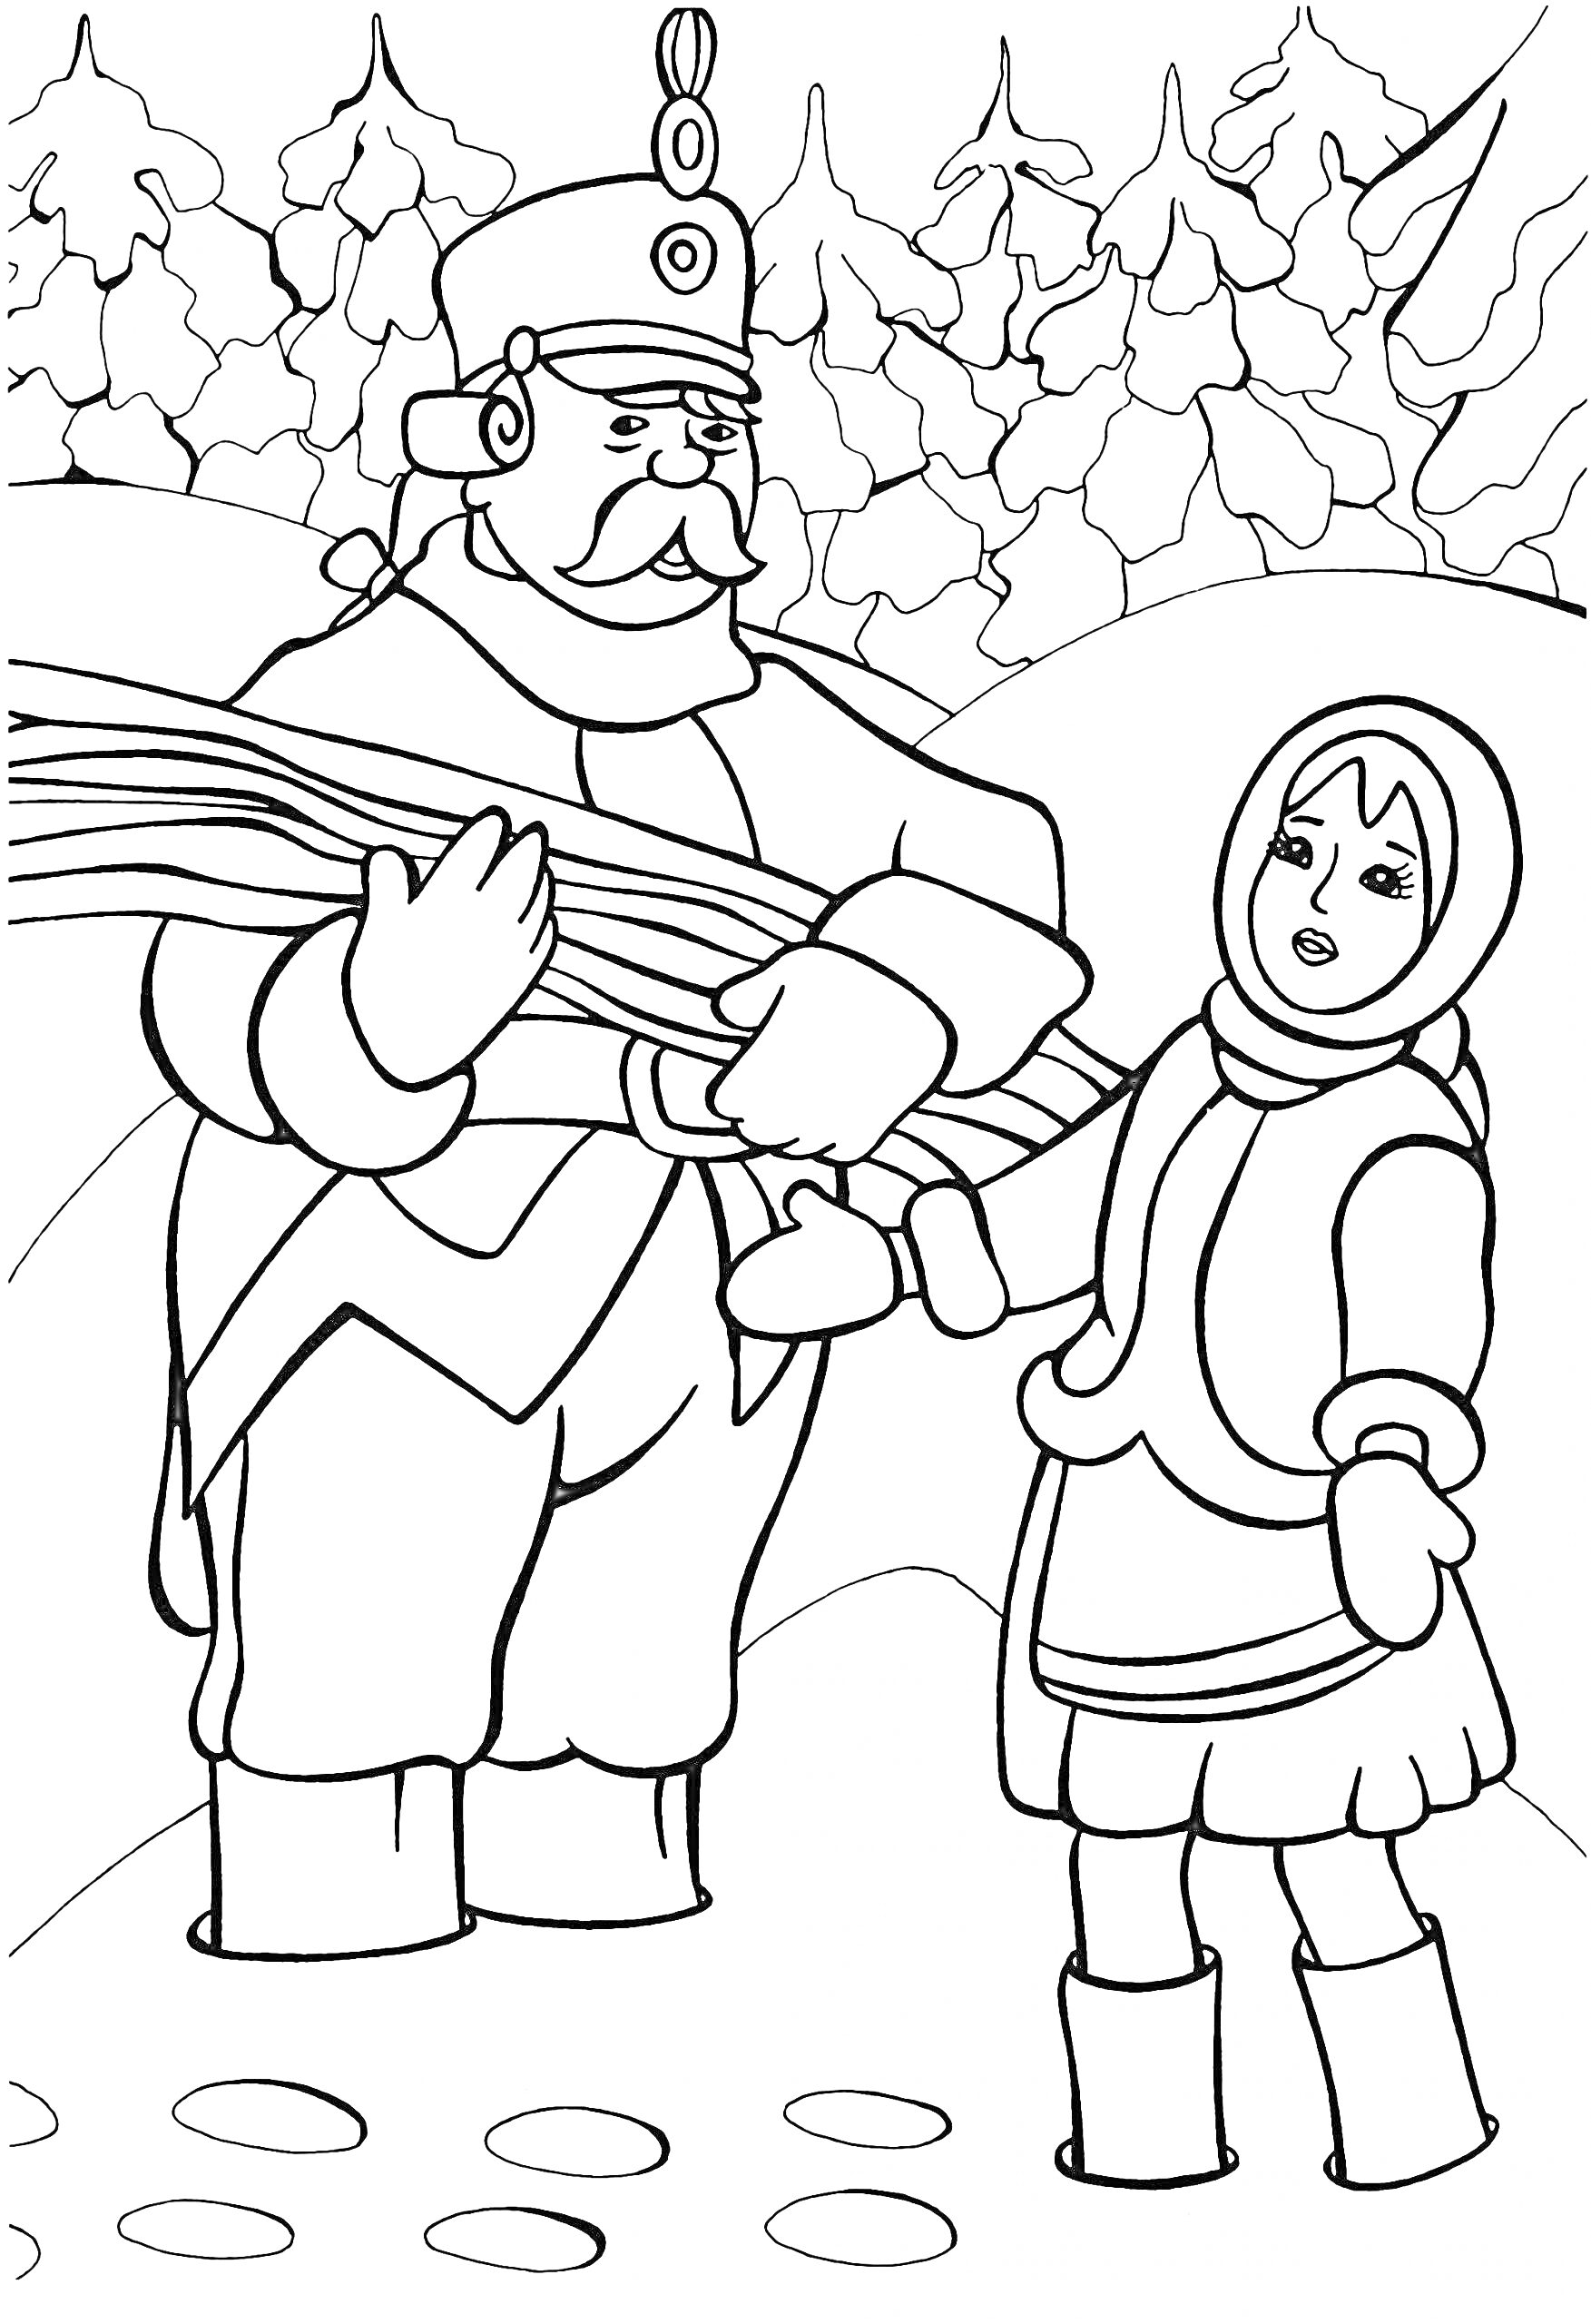 Солдат и девочка в зимнем лесу